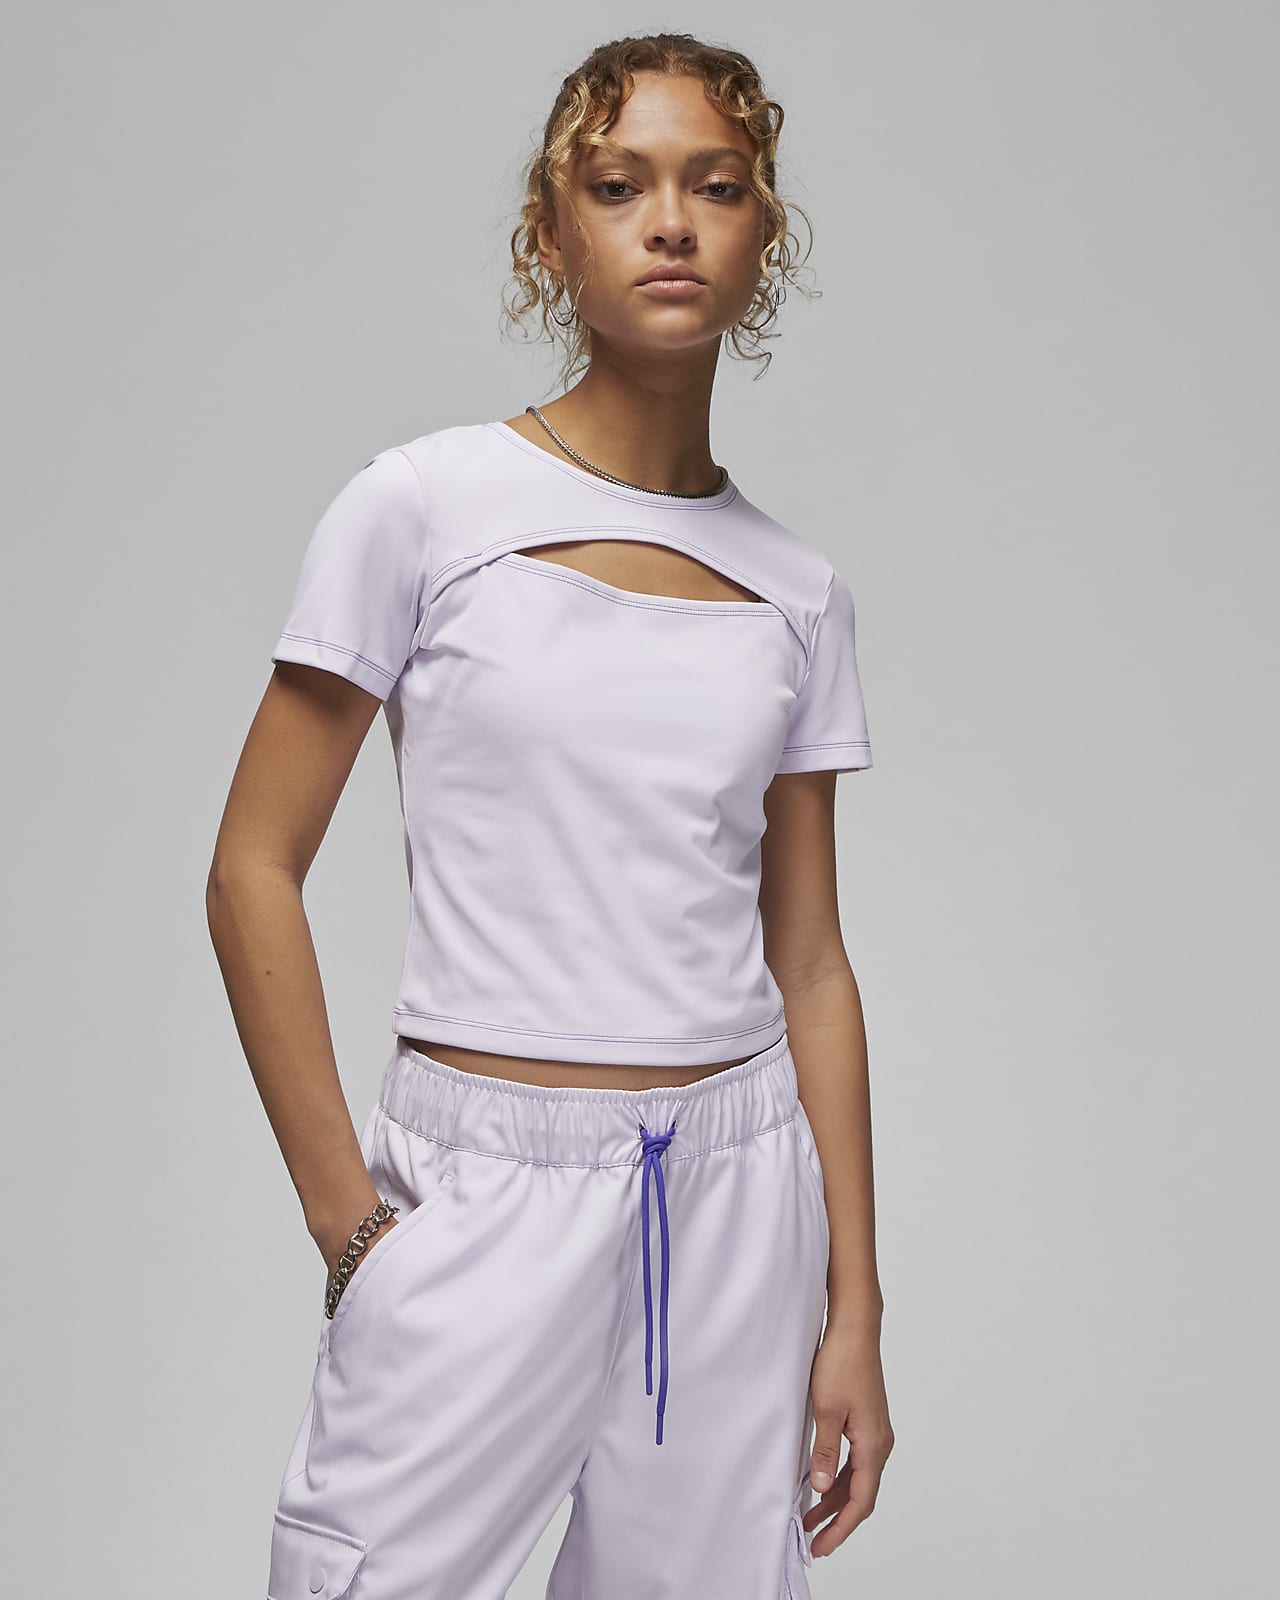 Γυναικεία μπλούζα με άνοιγμα σε σχήμα σταγόνας Jordan Sport